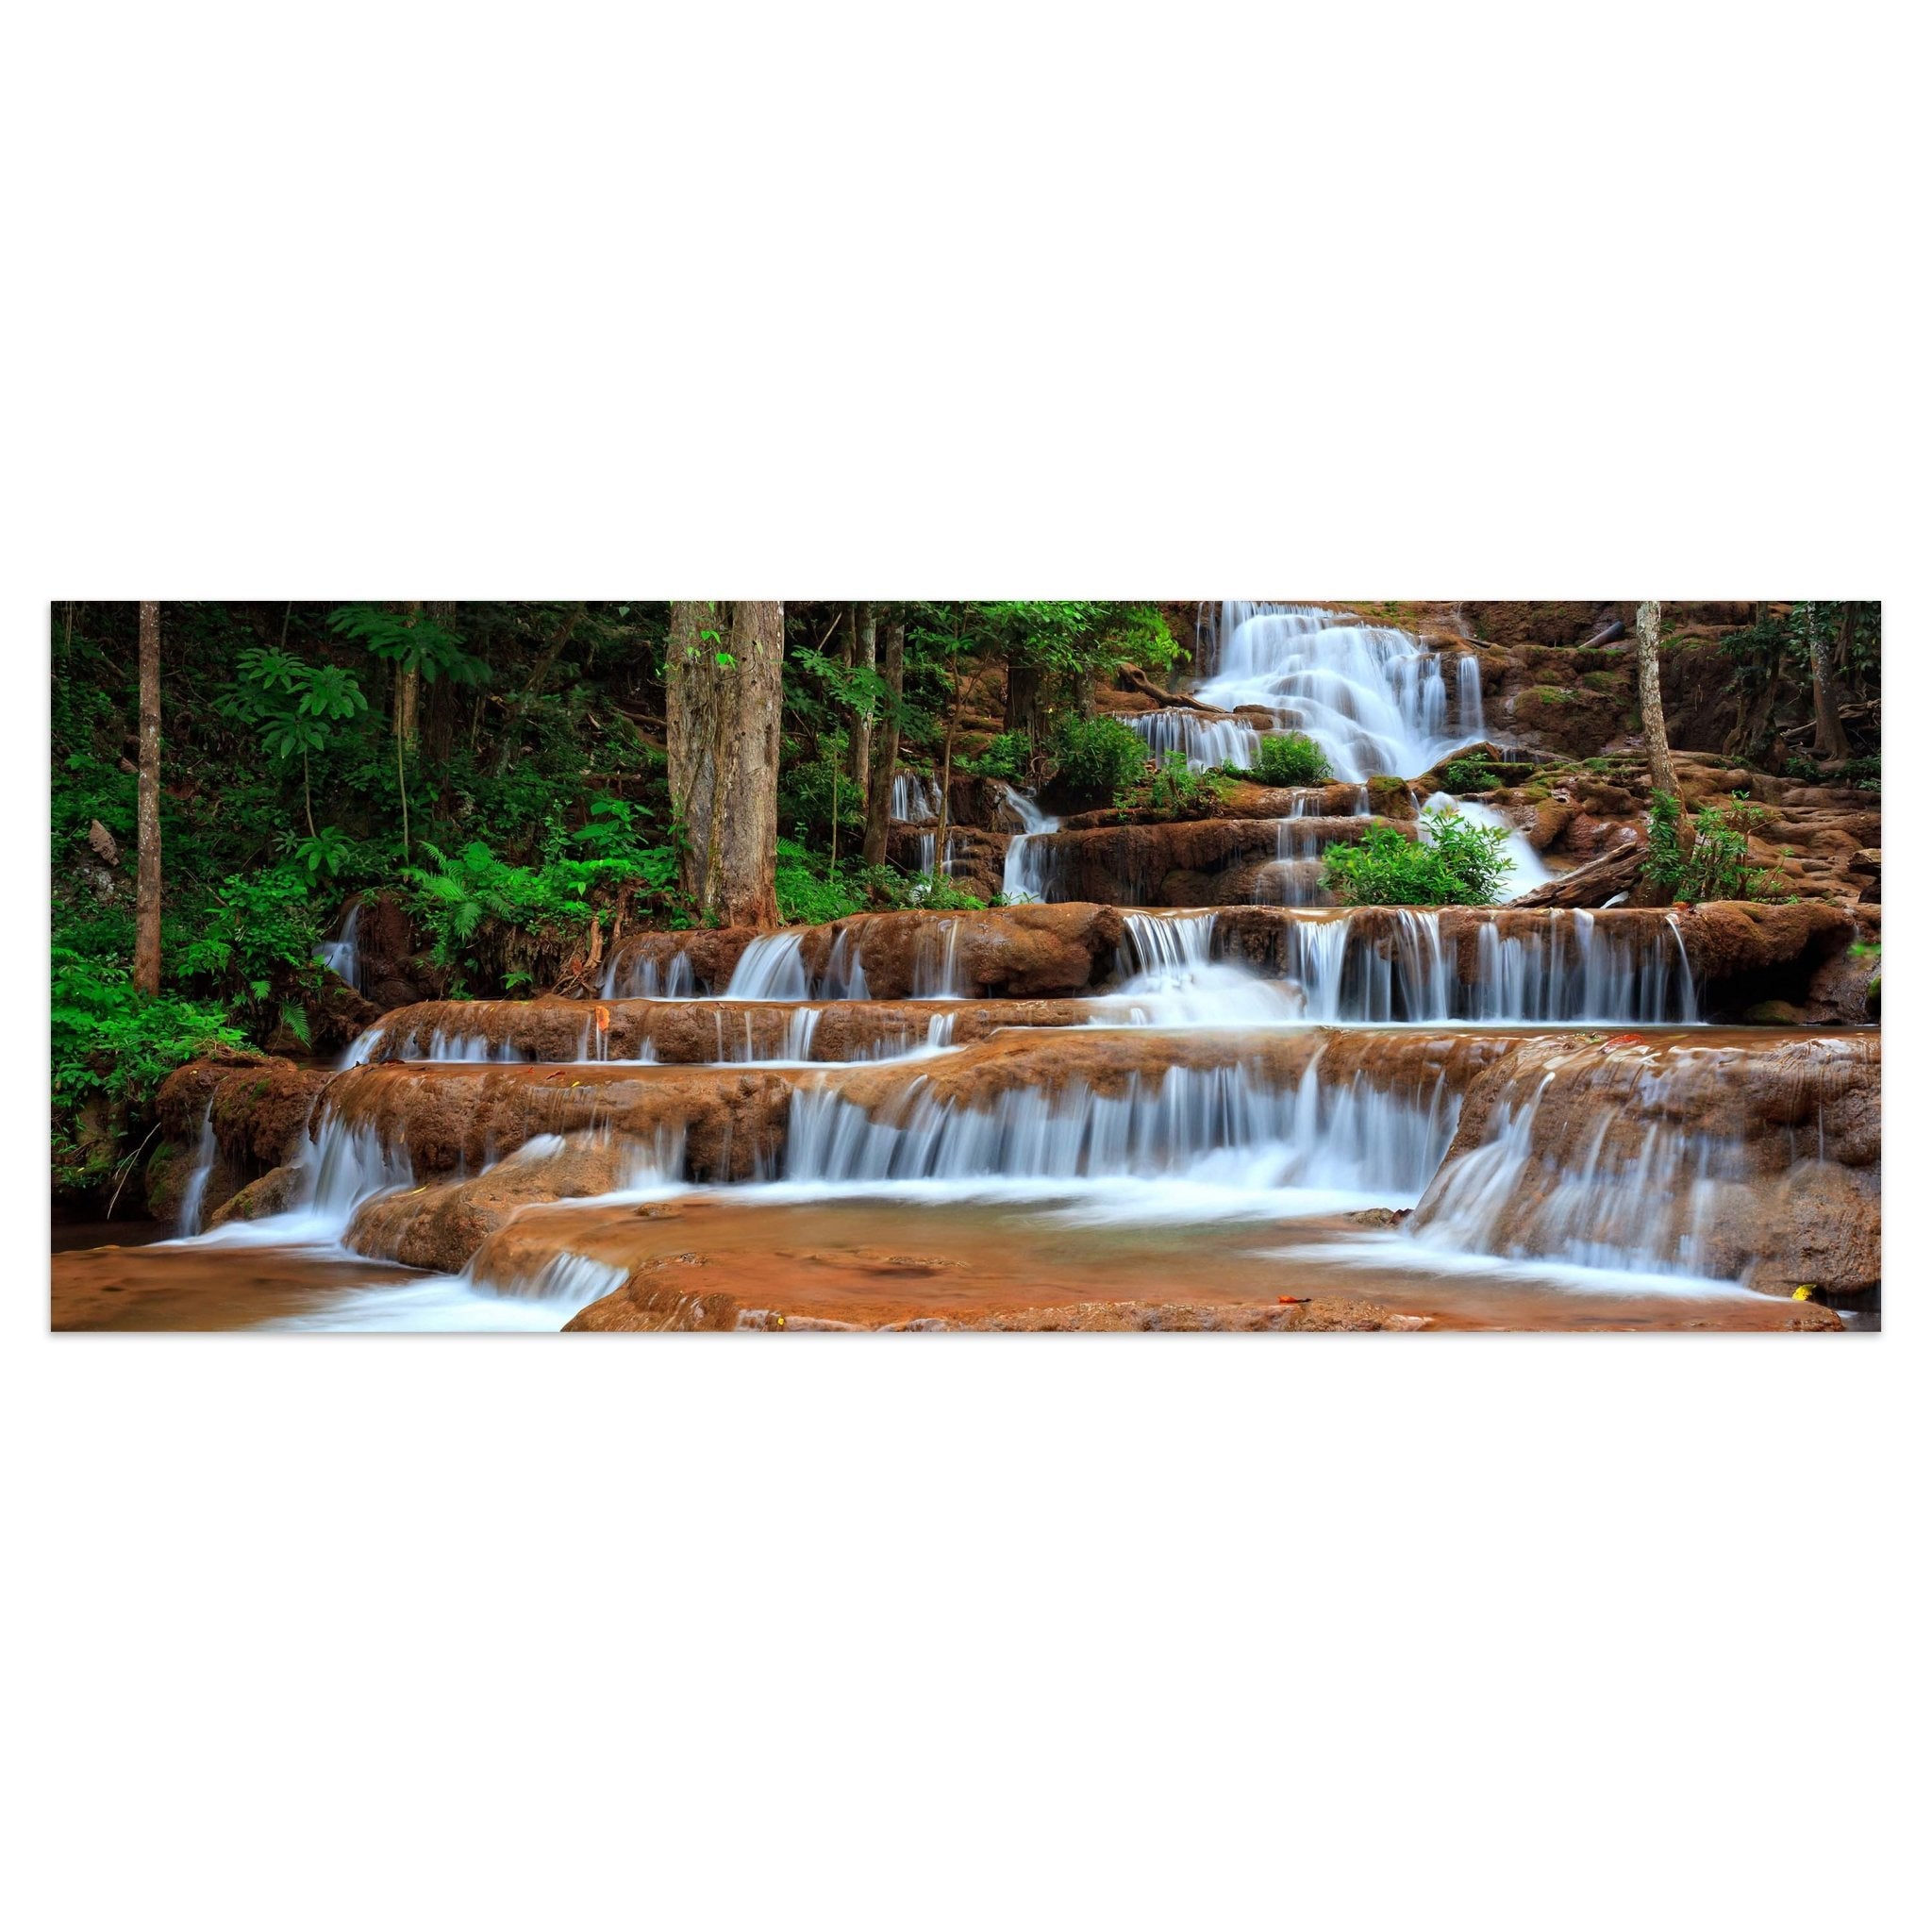 Leinwandbild Wasserfall im Wald.Thailand M0894 kaufen - Bild 1